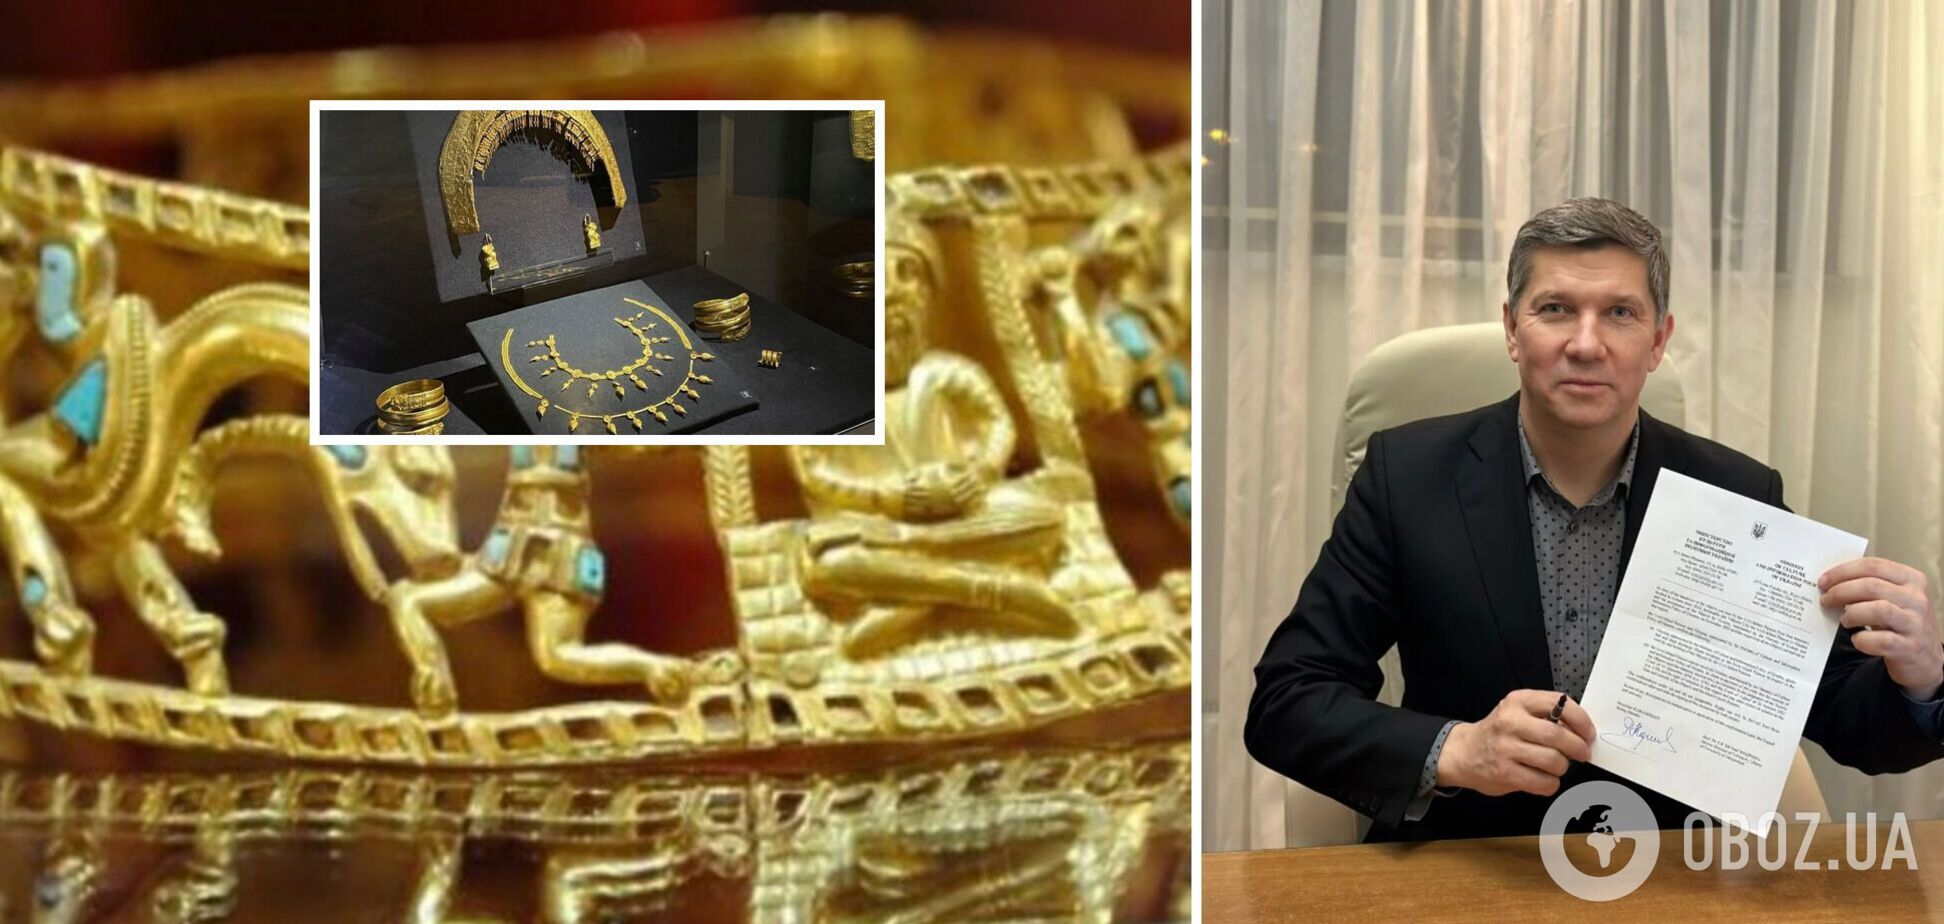 Скіфське золото повернеться в Україну: якої домовленості вдалося досягнути та про які артефакти йдеться. Фото